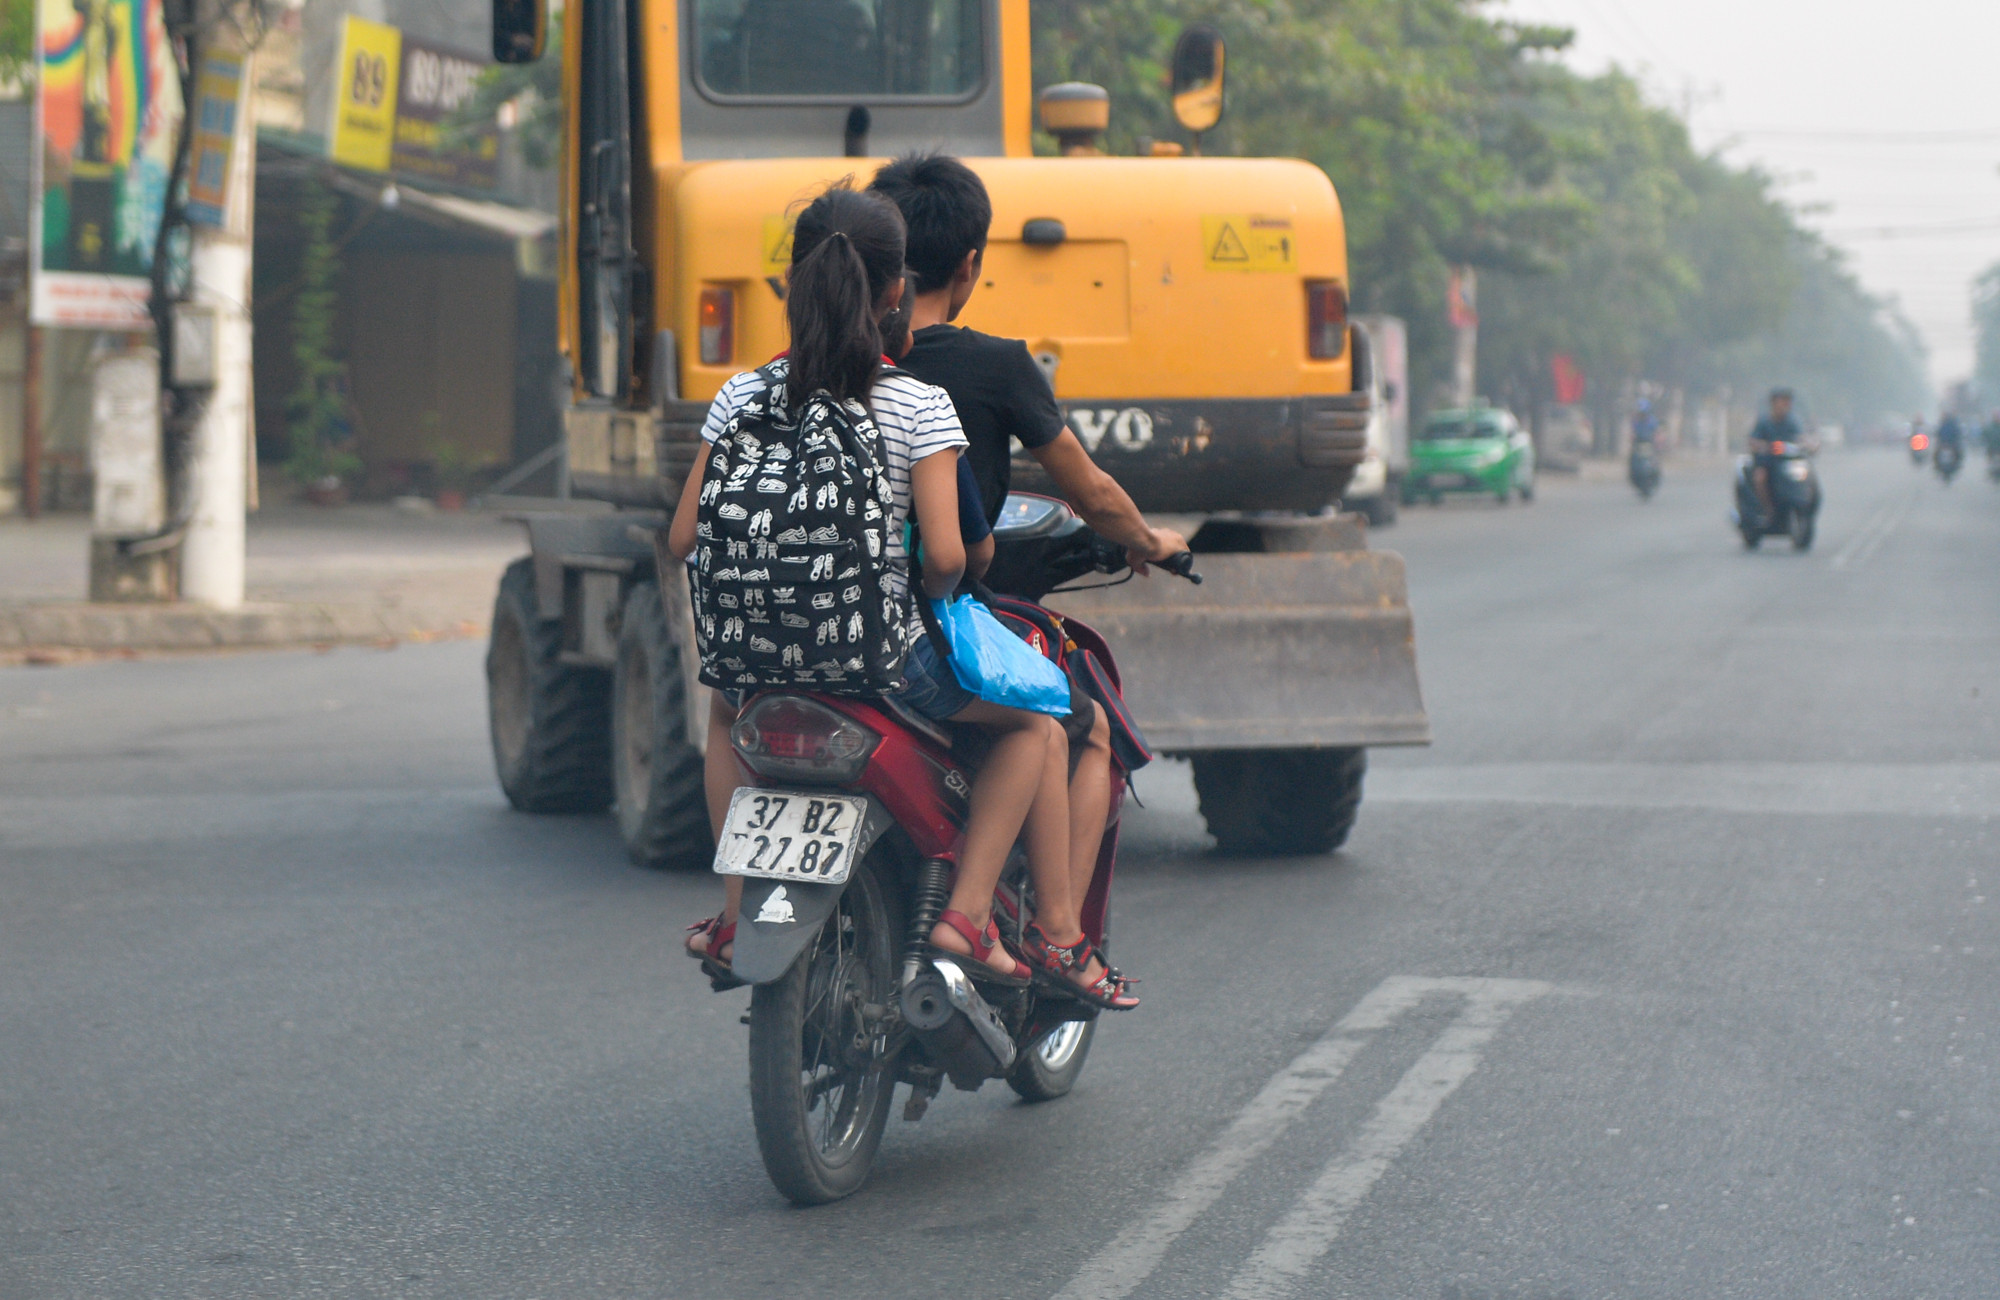 Thêm vào đó, nhiều phụ huynh tới trường đón con bằng xe máy nhưng không đội MBH cho trẻ. Hầu như phụ huynh nào cũng có cùng lý do về việc không đội MBH cho trẻ và đậu xe dưới lòng đường là: “do vội nên quên mang theo mũ